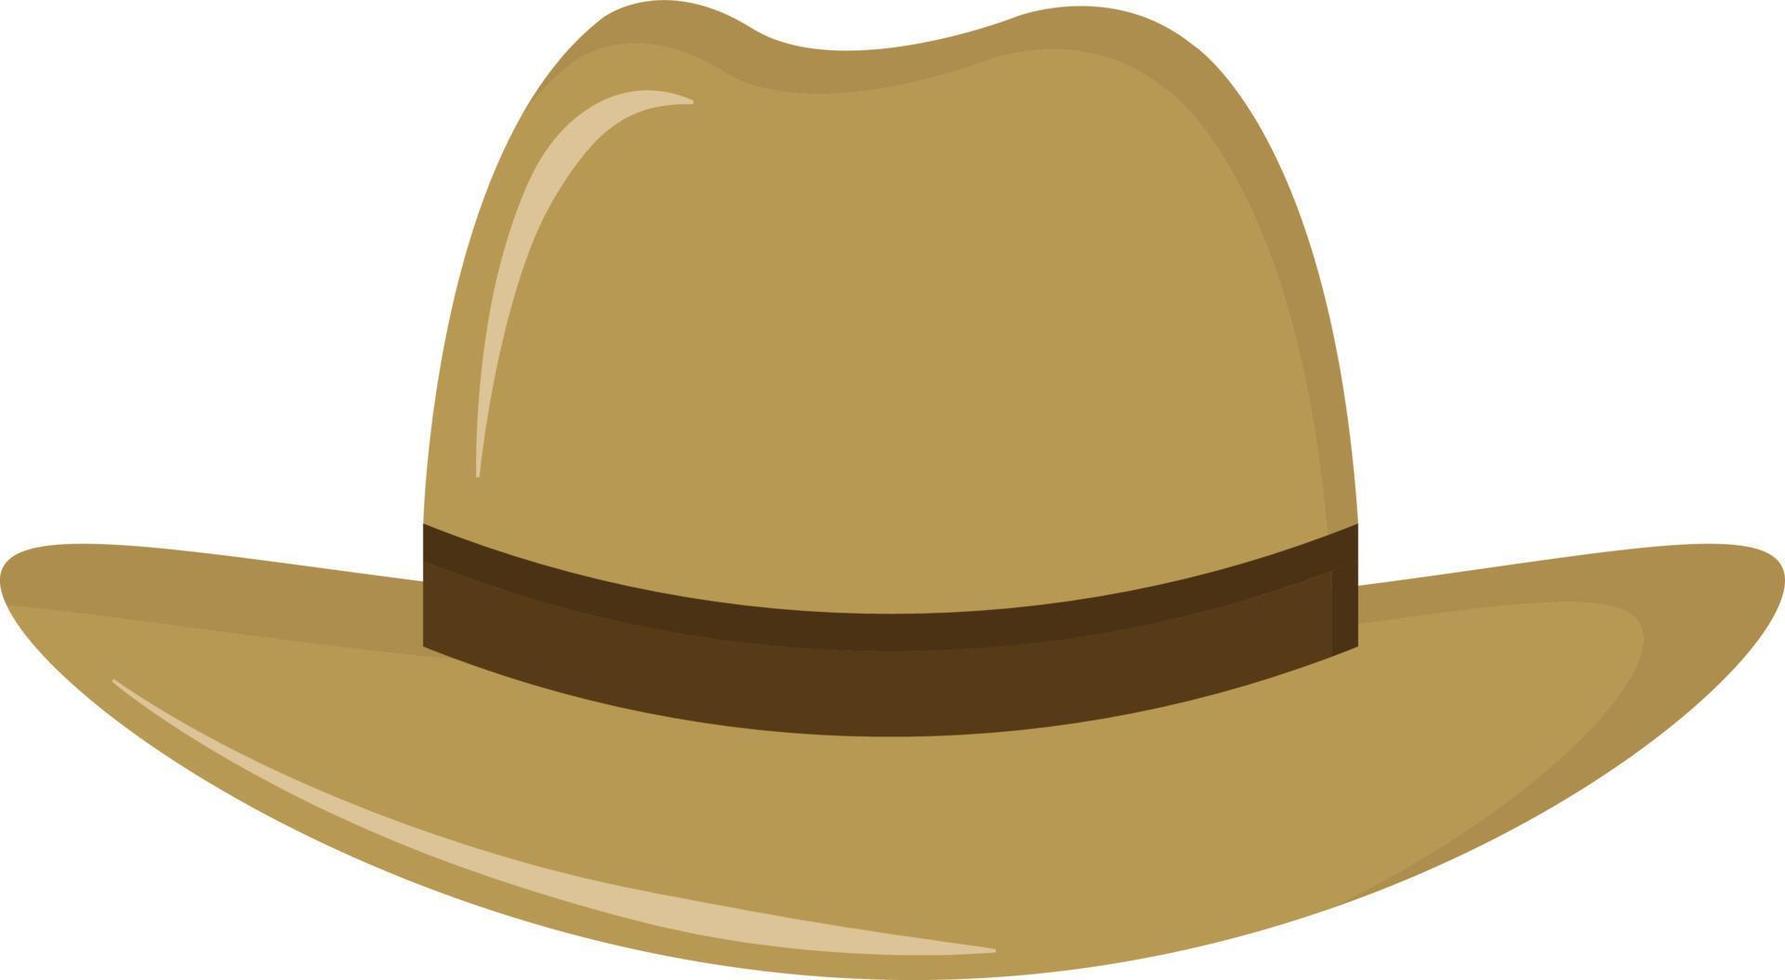 Farmer hat, illustration, vector on white background.